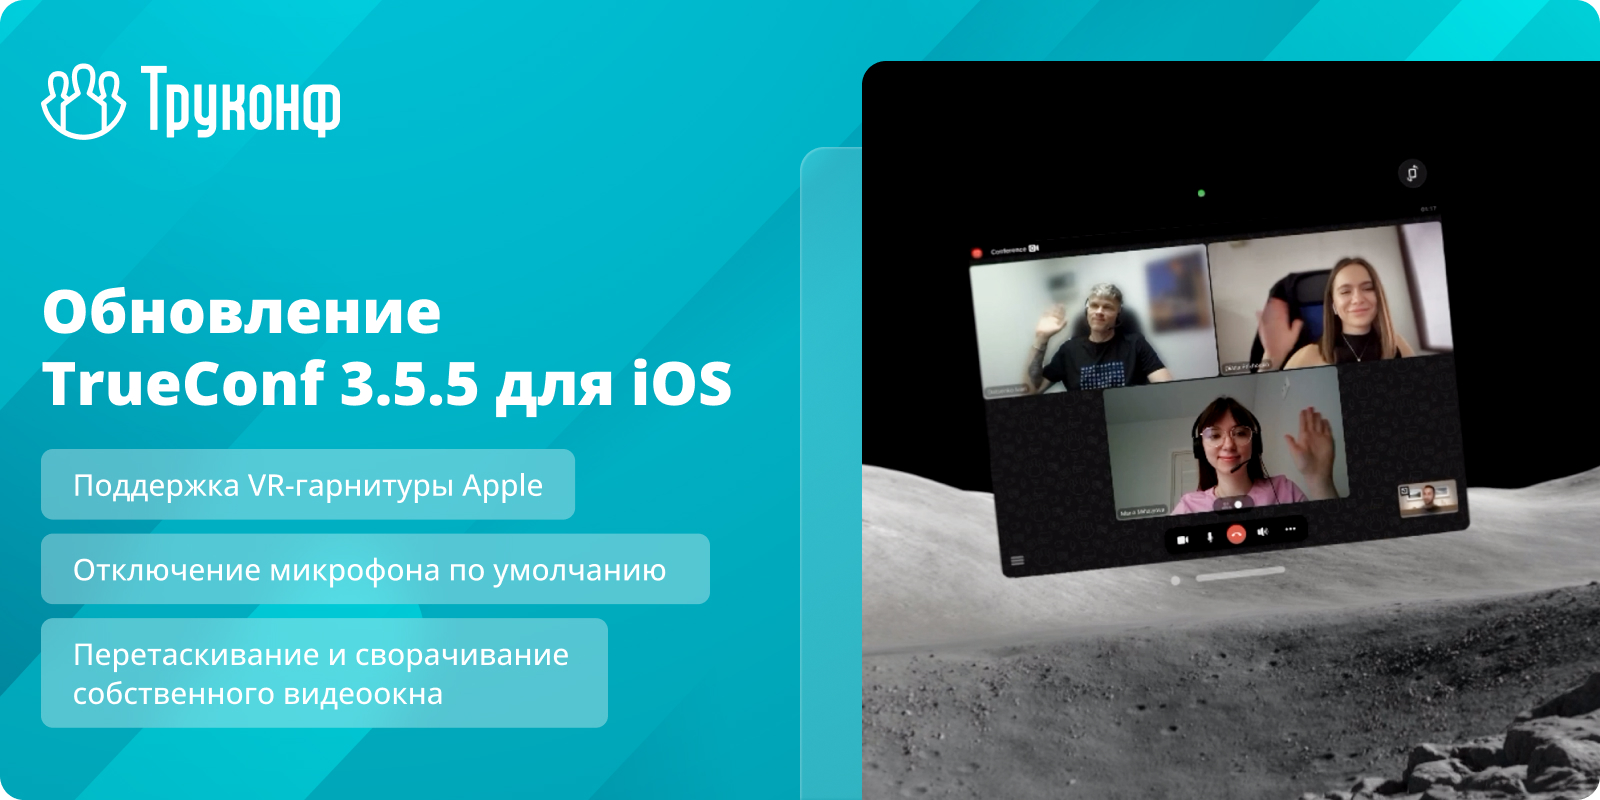 Обновление iOS 3.5.5: поддержка VR-гарнитуры Apple и отключение микрофона по умолчанию 1